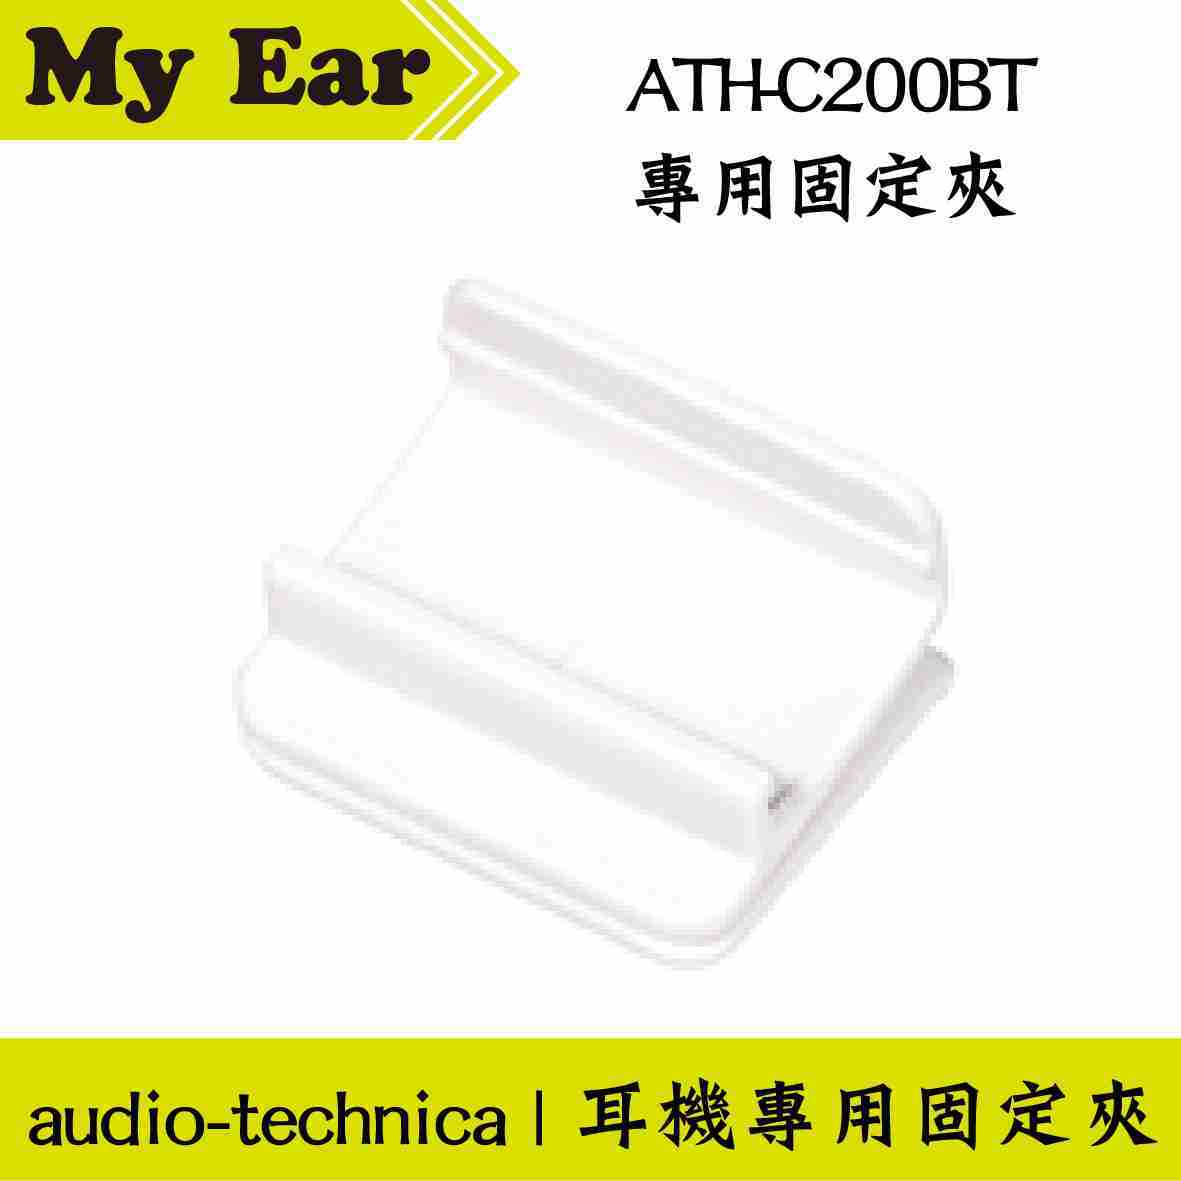 鐵三角 紅色 適用 ATH-C200BT 固定夾 耳機 專用夾 | My Ear 耳機專門店